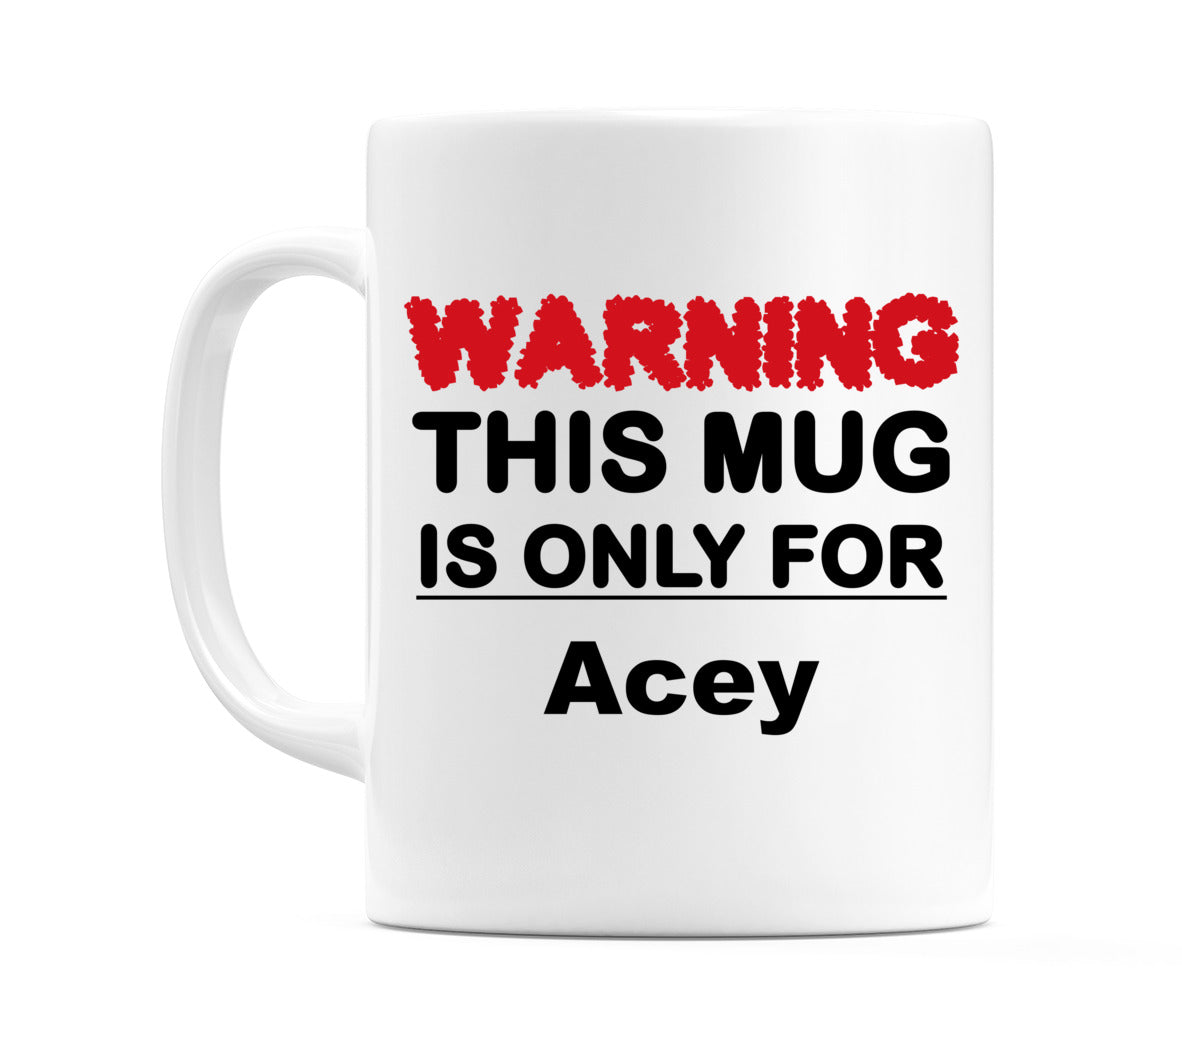 Warning This Mug is ONLY for Acey Mug